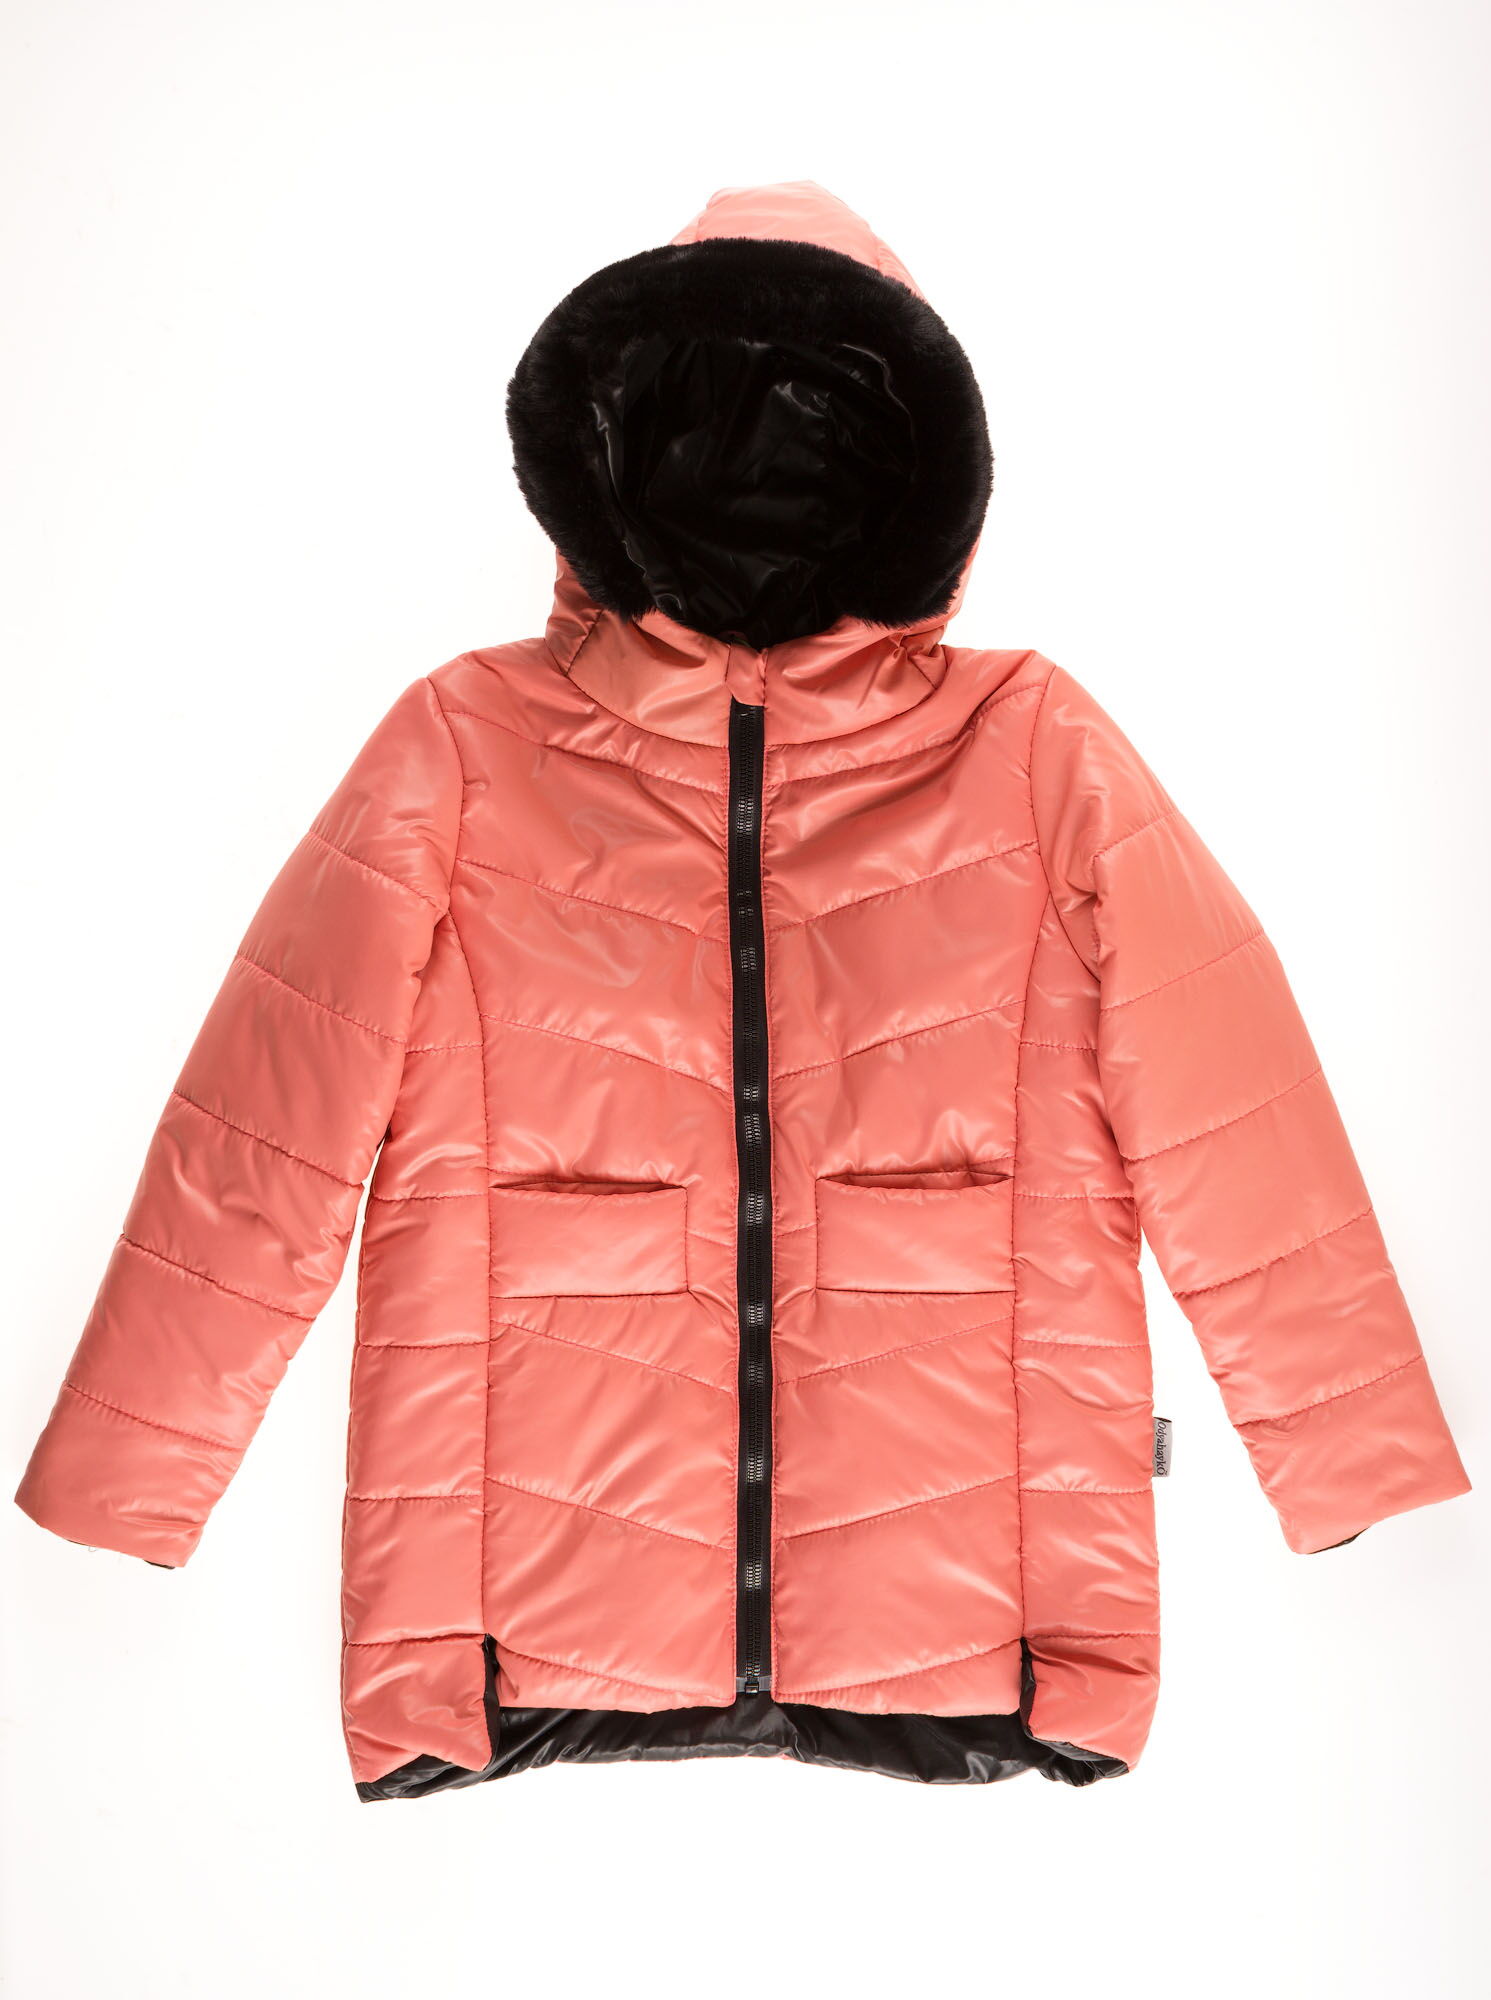 Куртка для девочки ОДЯГАЙКО коралловая 22134О - цена